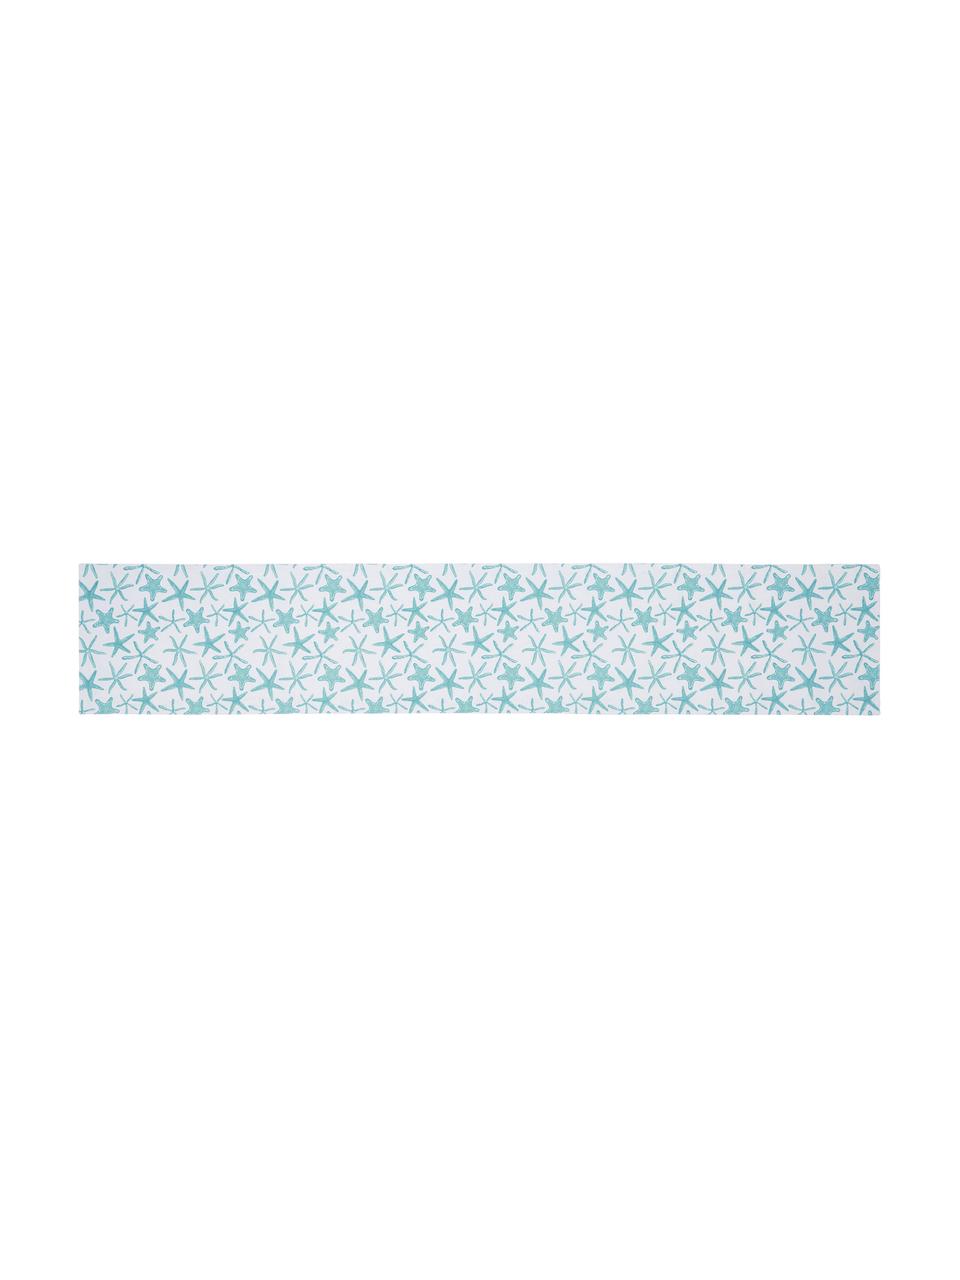 Waterafstotende tafelloper Starbone, dubbelzijdig, Polyester, Wit, blauw, 33 x 178 cm